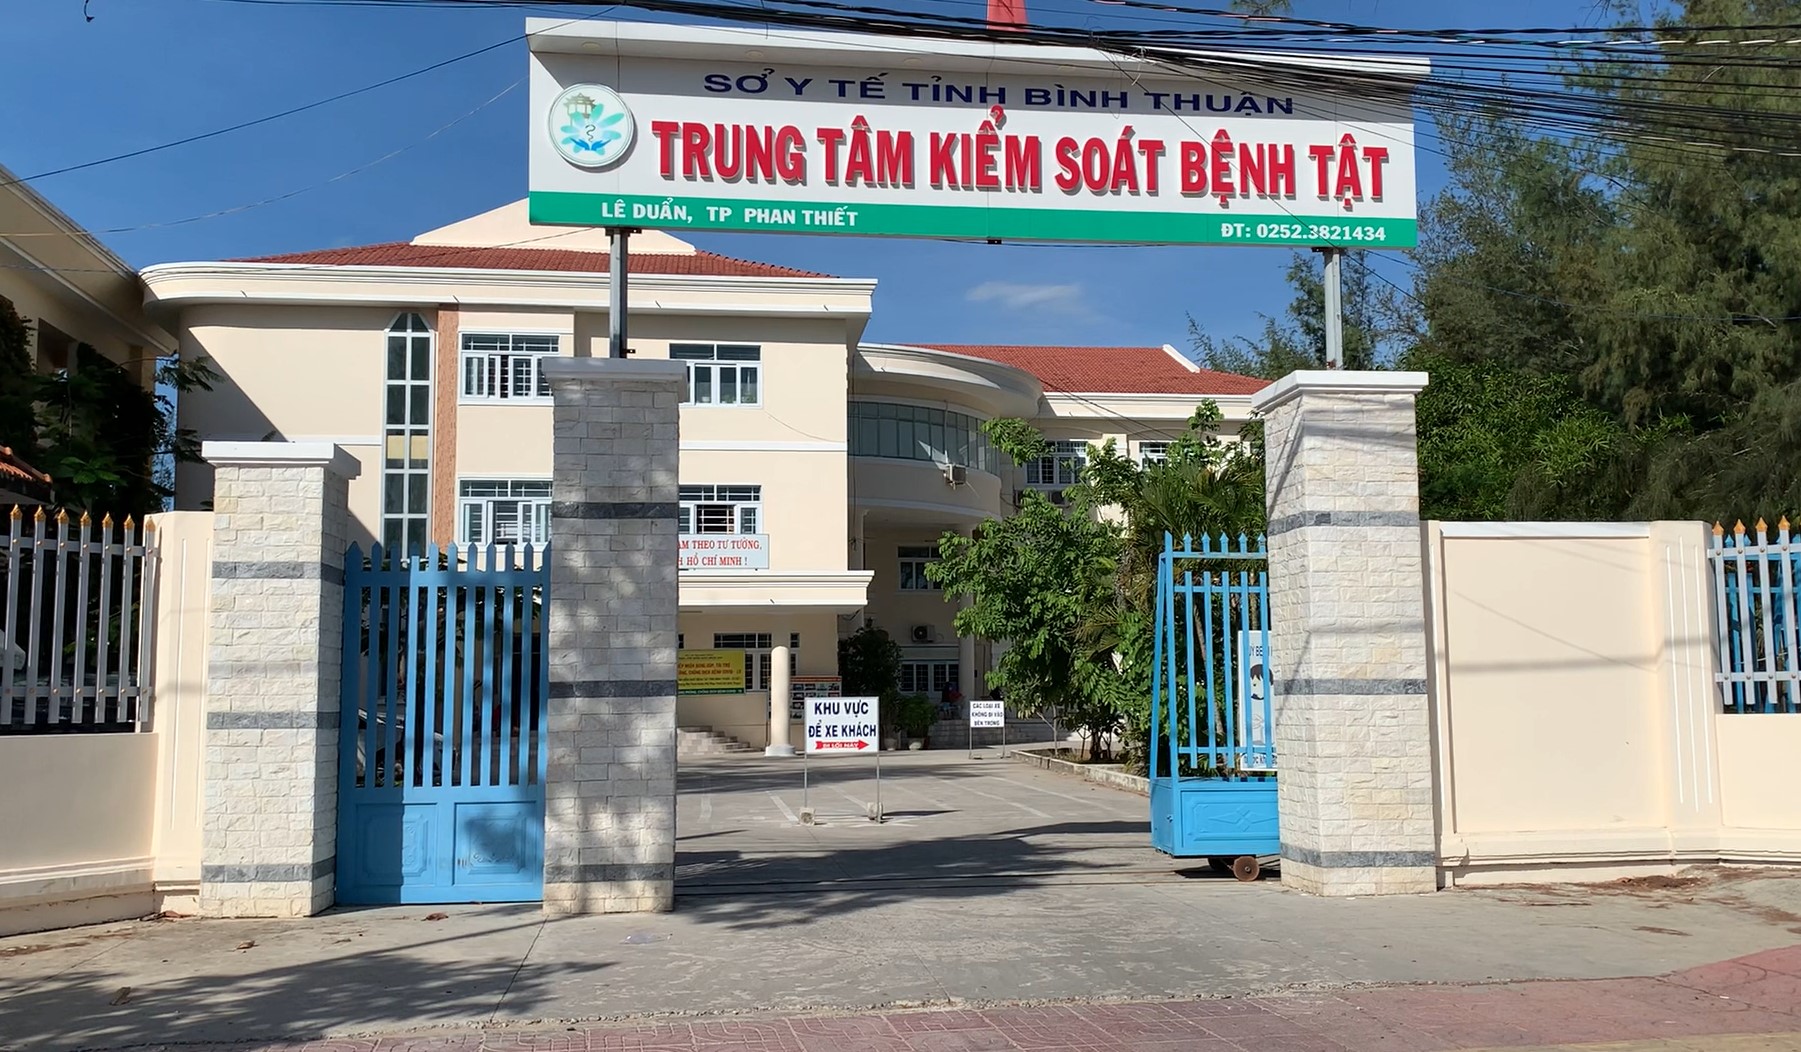 Trung tâm Kiểm soát bệnh tật tỉnh Bình Thuận. Ảnh: DT